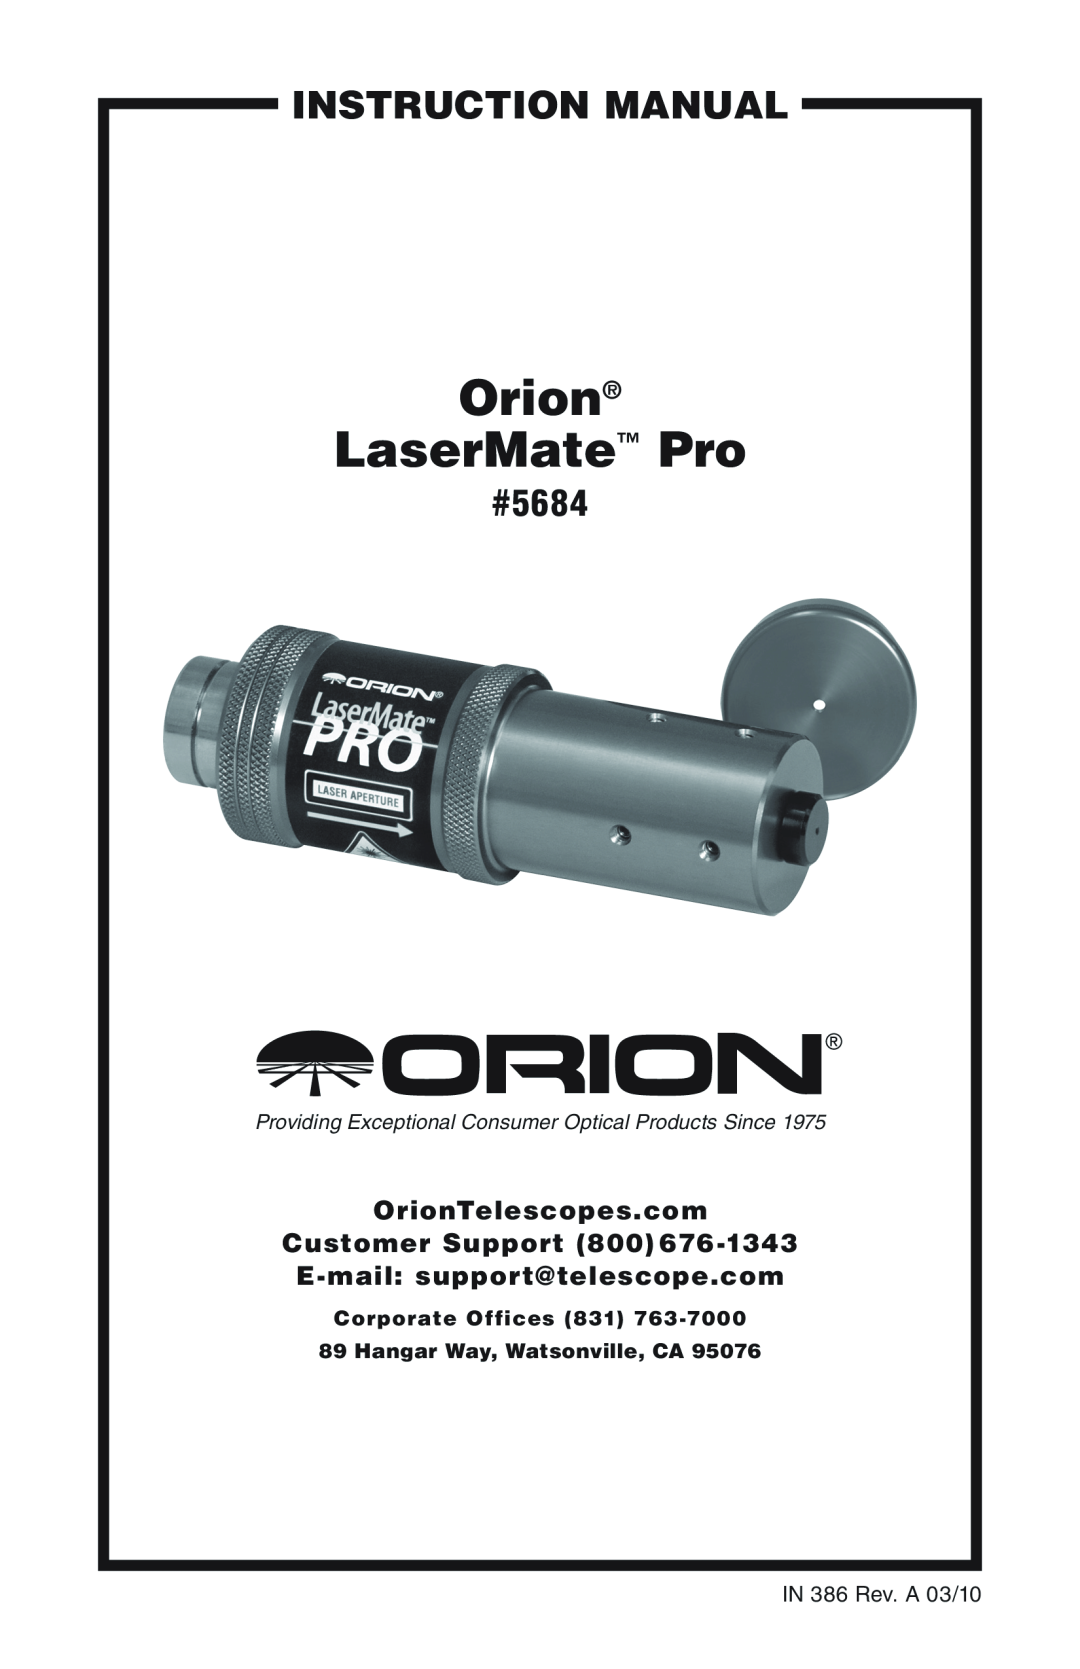 Orion instruction manual instruction Manual, Orion LaserMate Pro, #5684, IN 386 Rev. A 03/10 